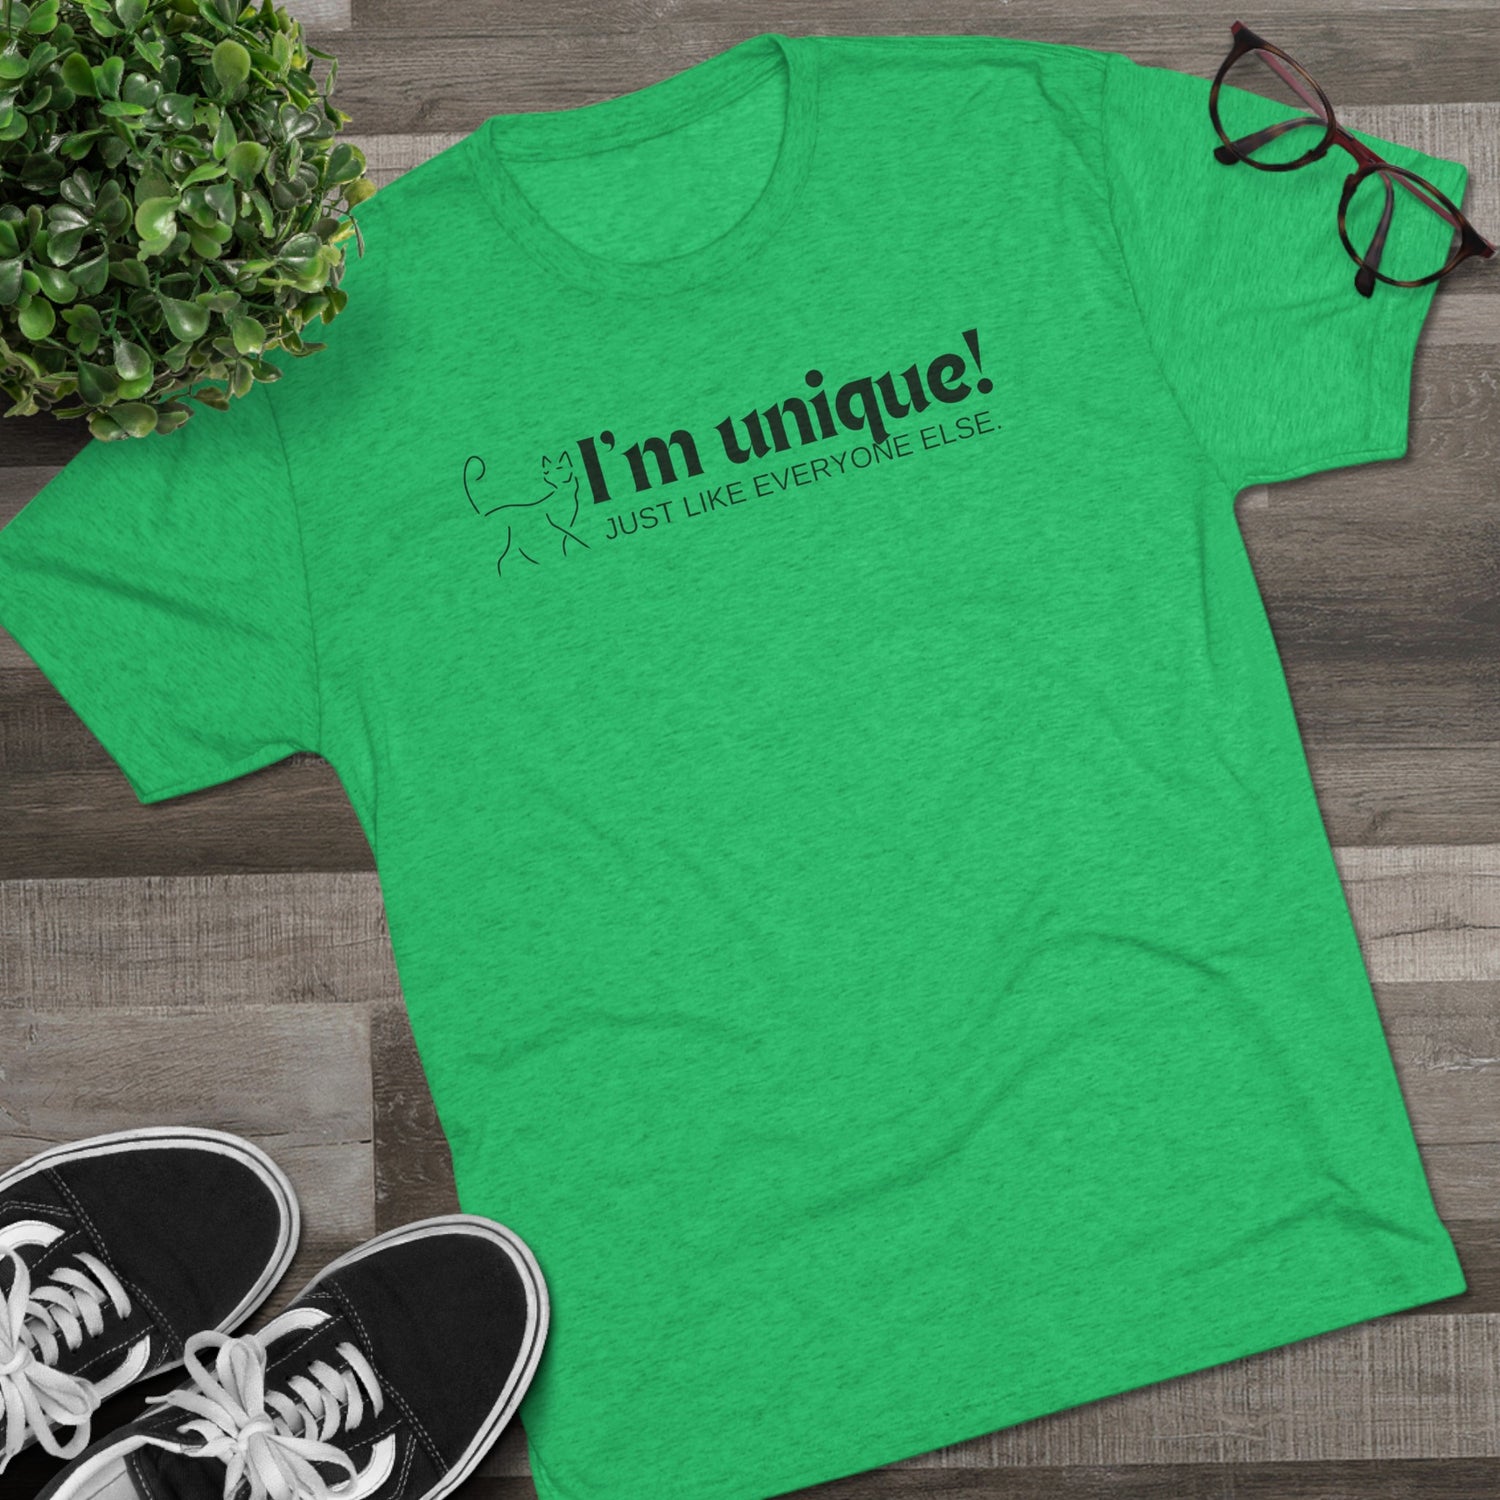 Shirts: Unisex